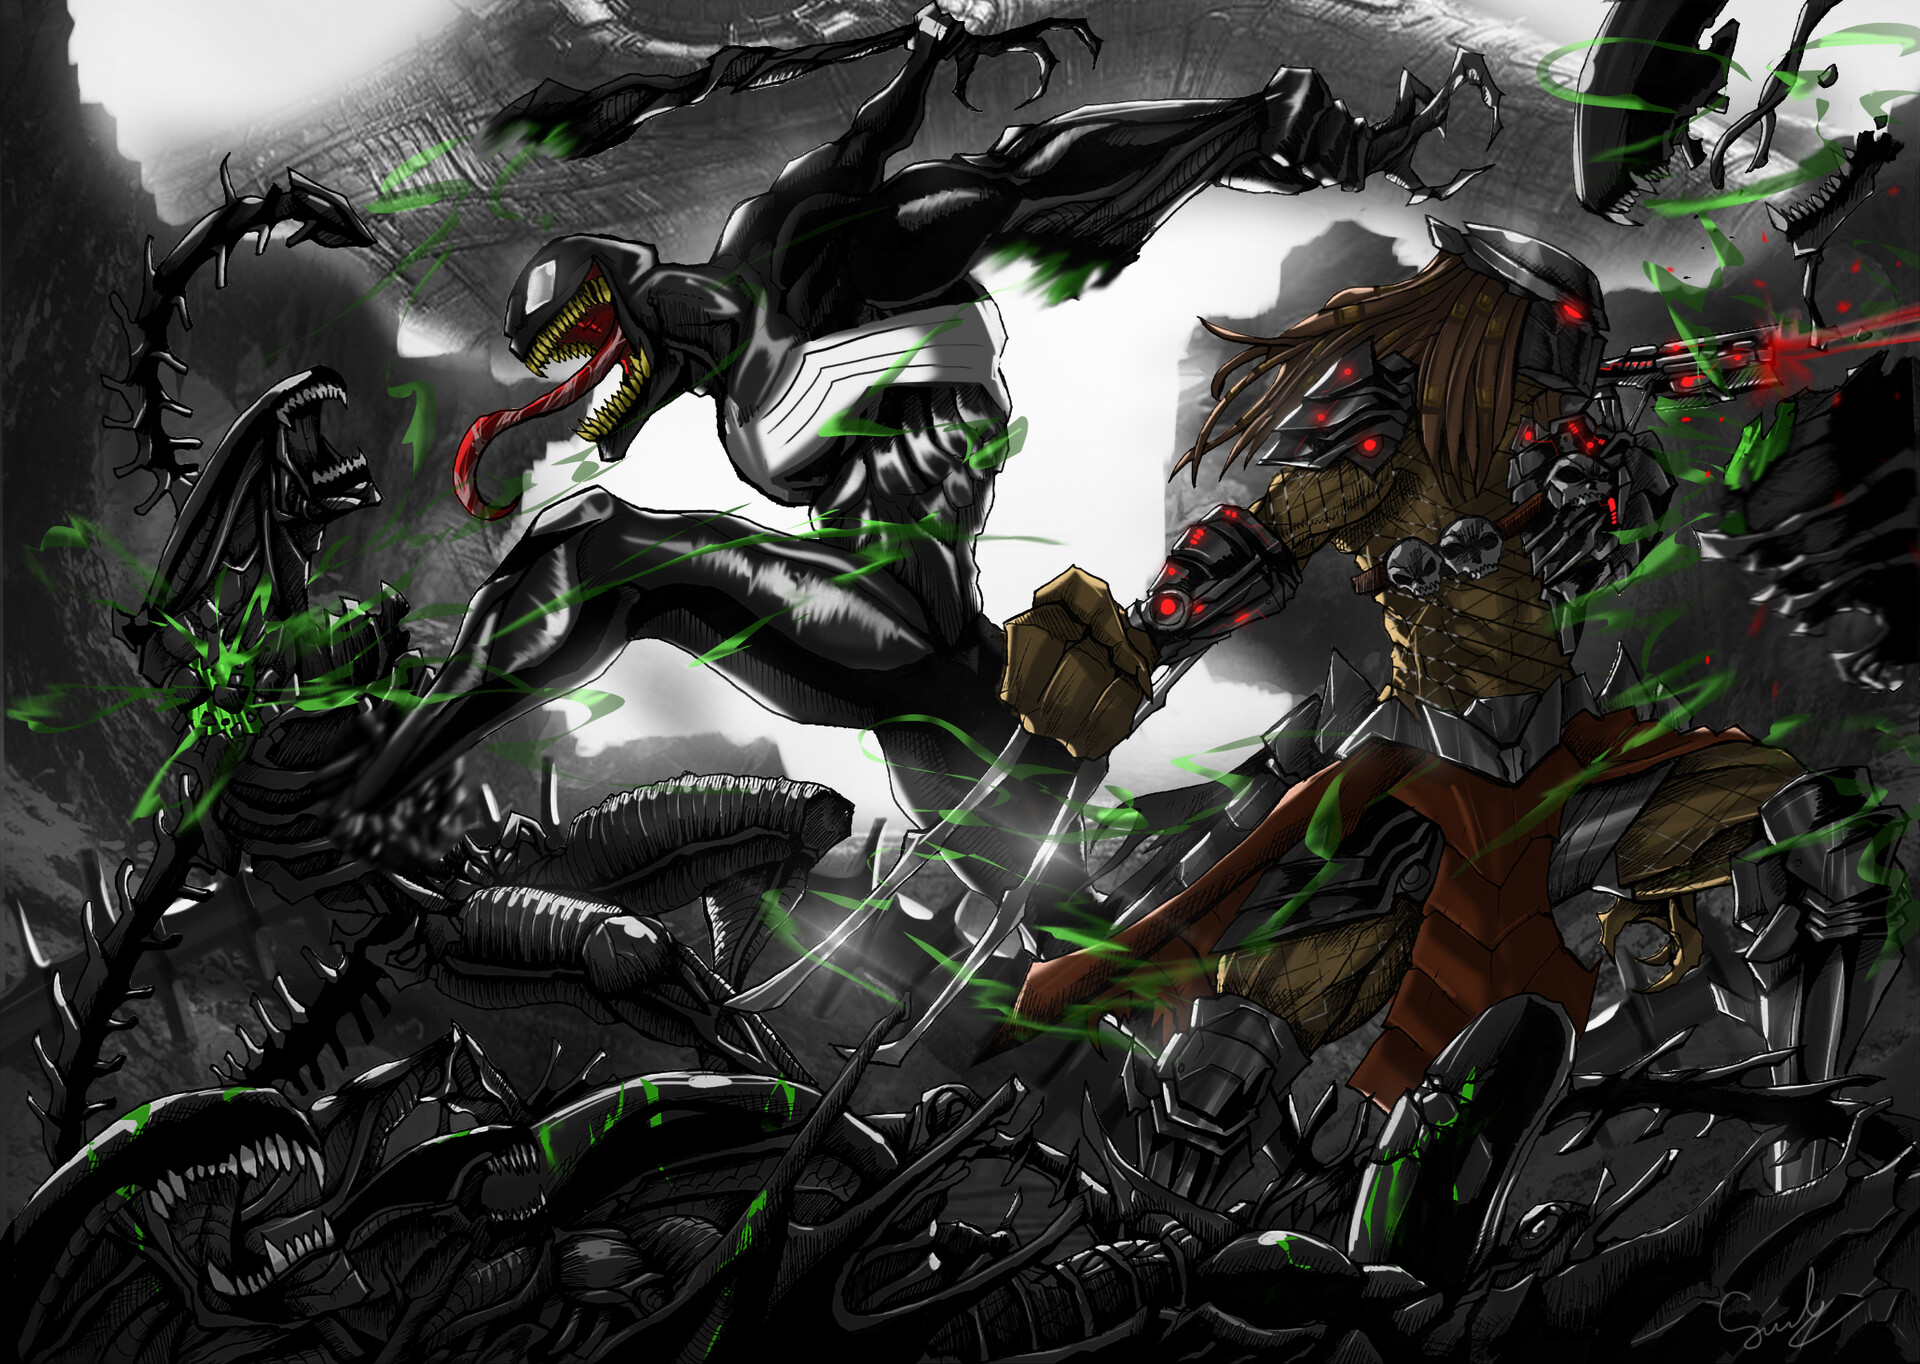 ArtStation - Alien vs Predator Fanart